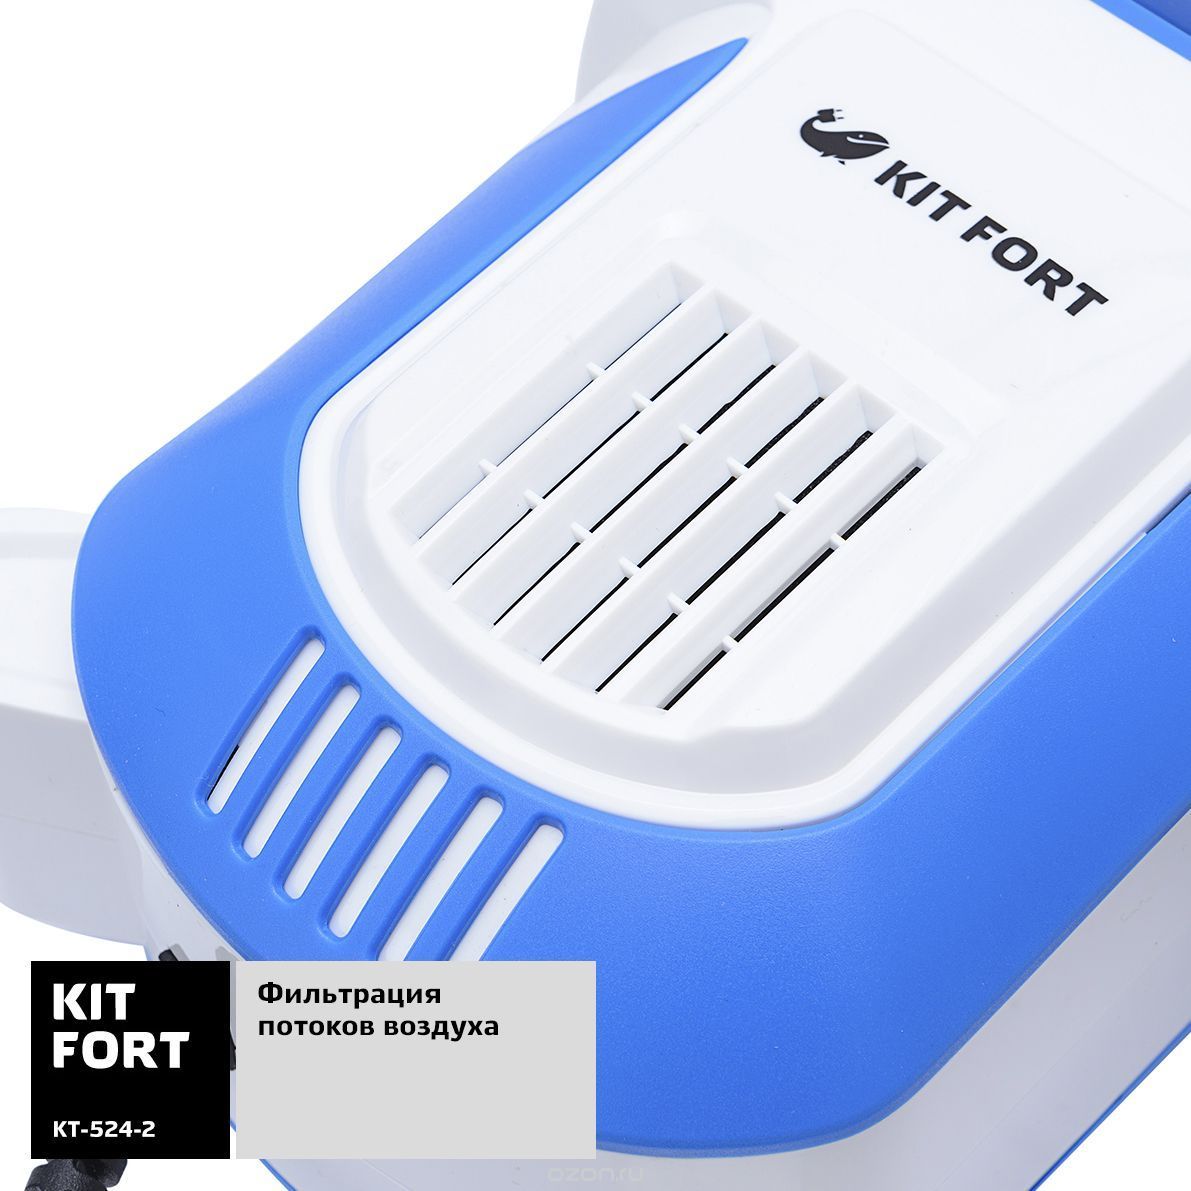   Kitfort -524, White Blue